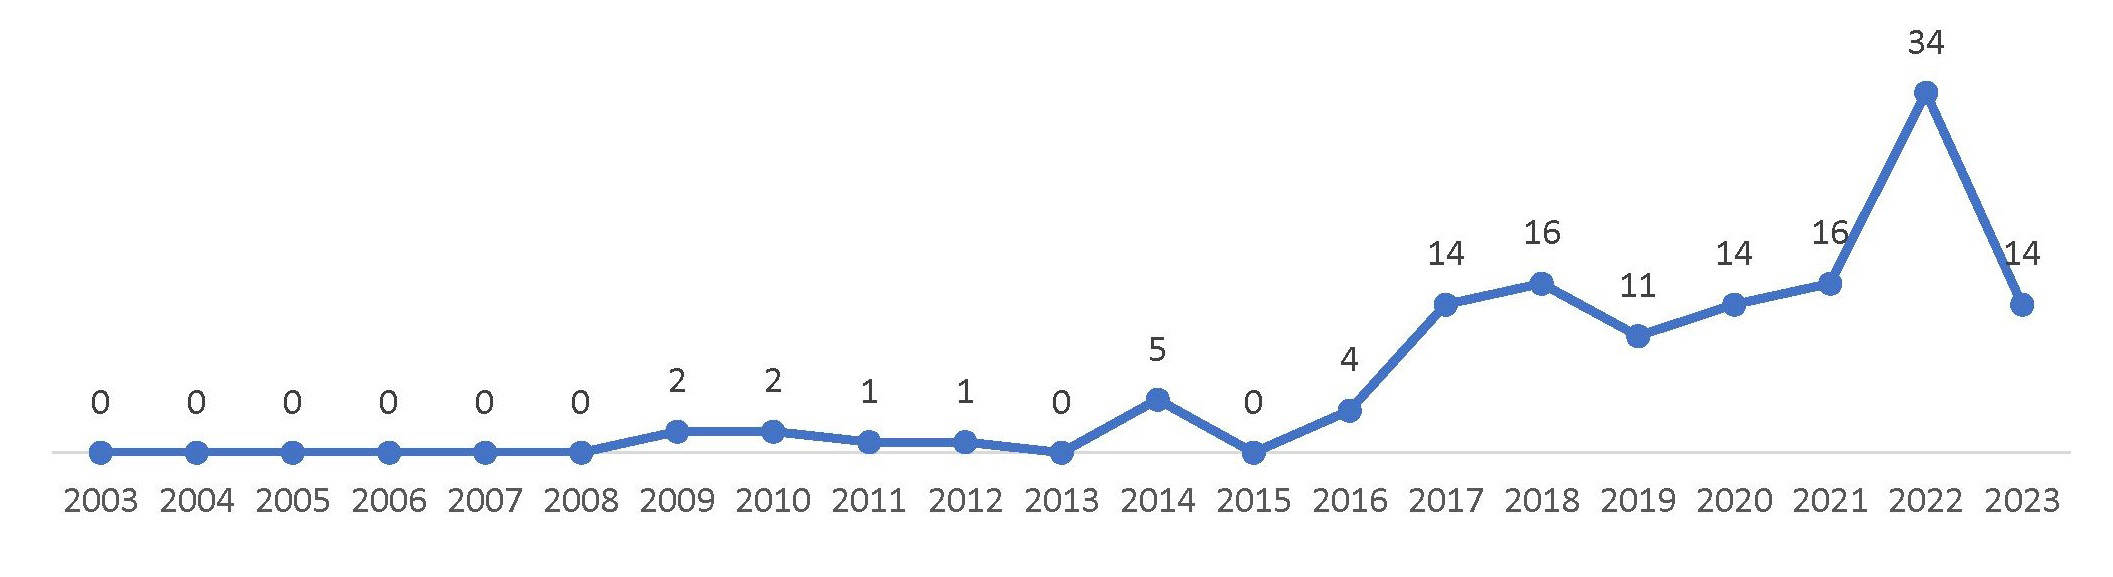 Рисунок 13 – Распределение количества патентных публикаций WI Charge по годам в период с 2003 г. по 01.10.2023 г.